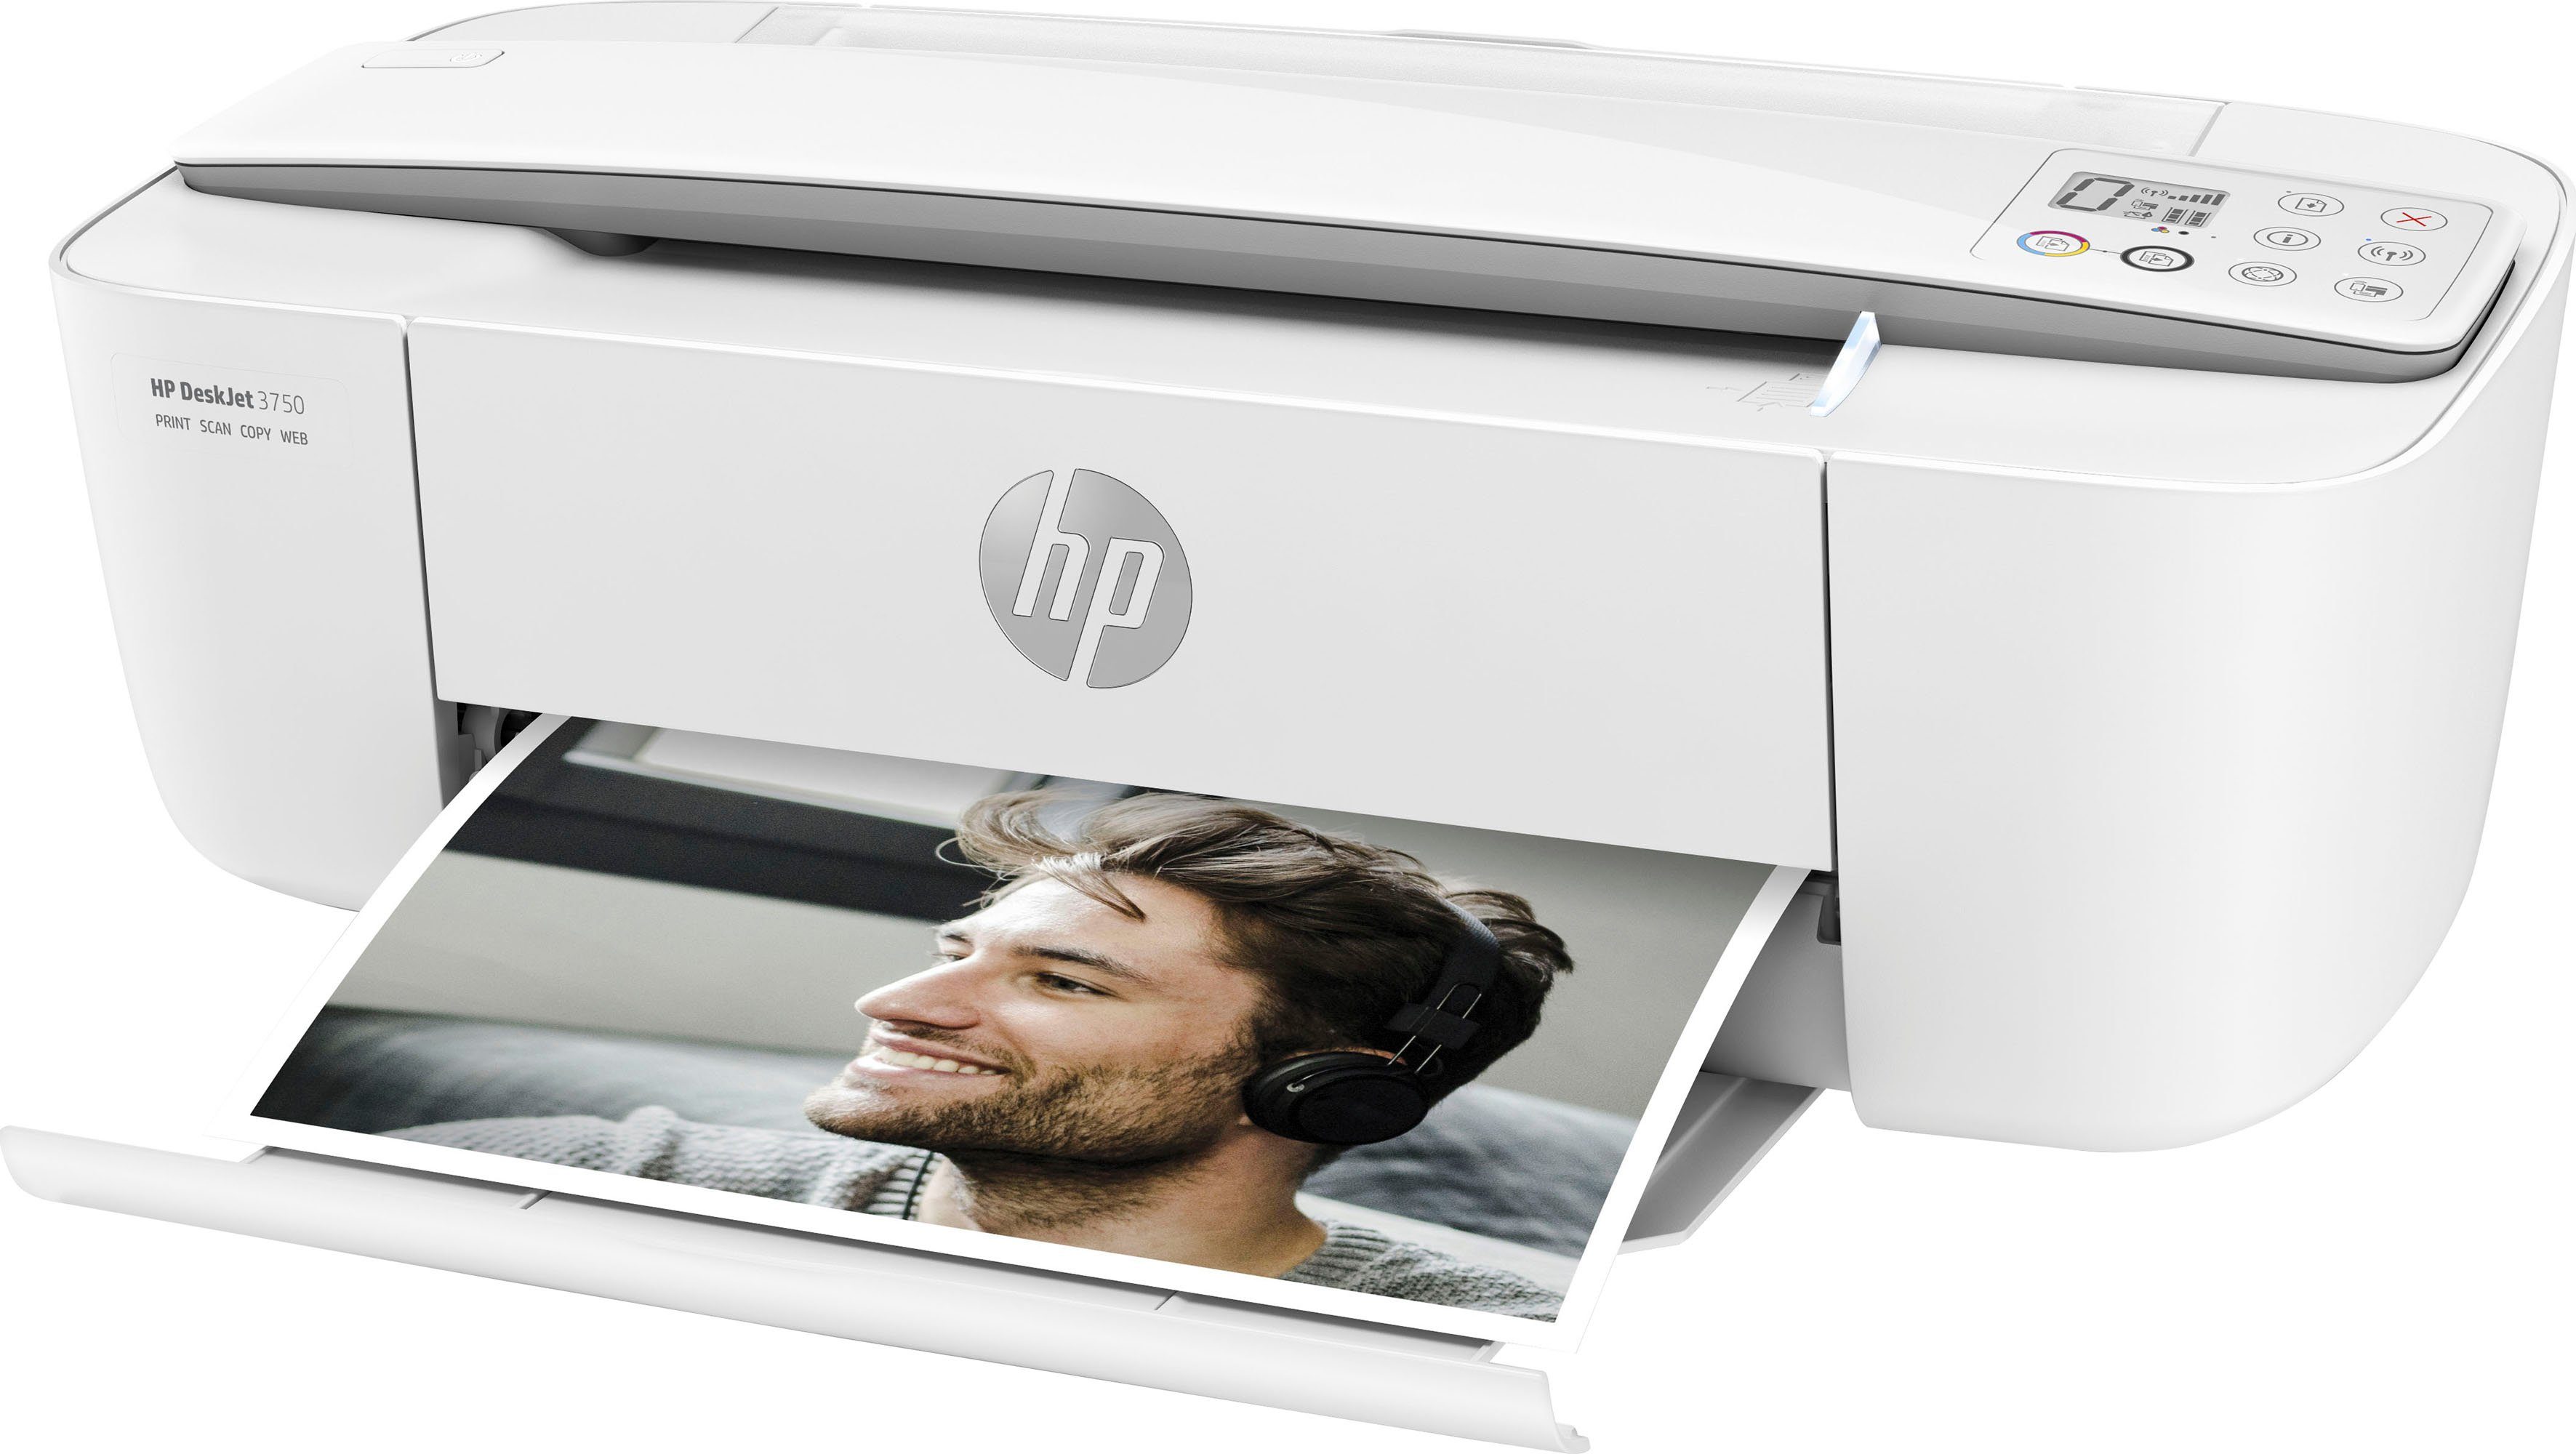 HP Drucker kompatibel) HP+ Ink (Wi-Fi), Multifunktionsdrucker, (WLAN DeskJet 3750 Instant